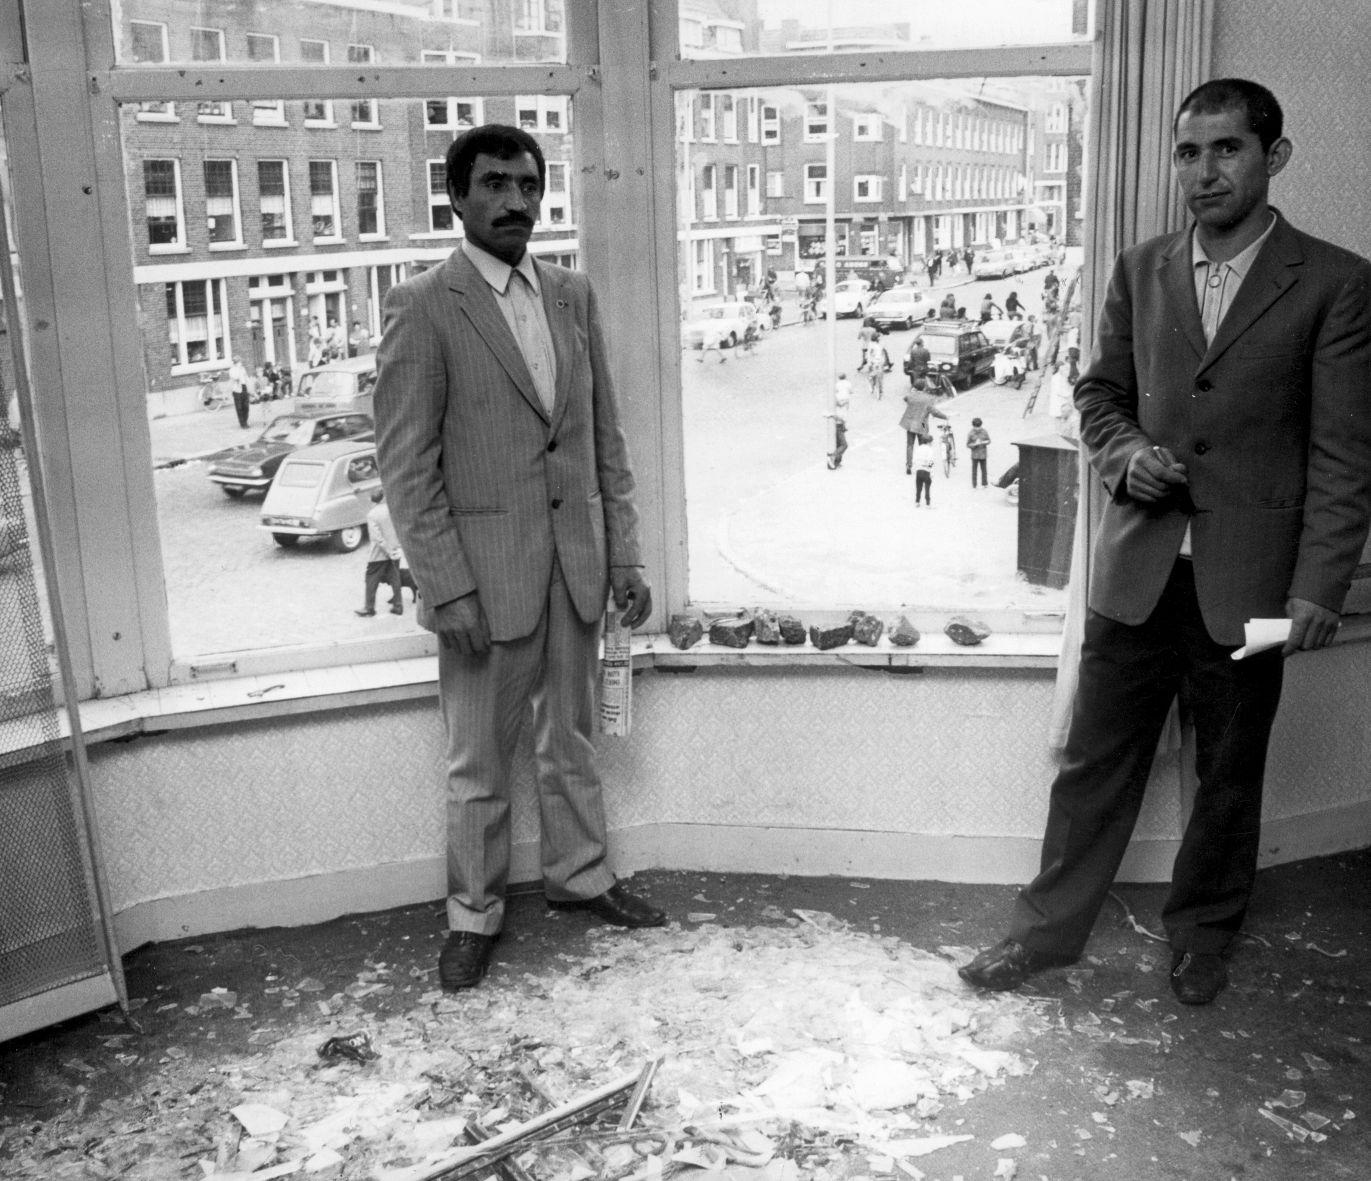 Rellen Afrikaanderbuurt: Turkse gastarbeiders temidden van ravage van glasscherven in een pension in de buurt, waar de ramen met talloze stenen, -een klein gedeelte ligt in de vensterbank-, zijn ingegooid, Rotterdam, Nederland 15 augustus 1972.